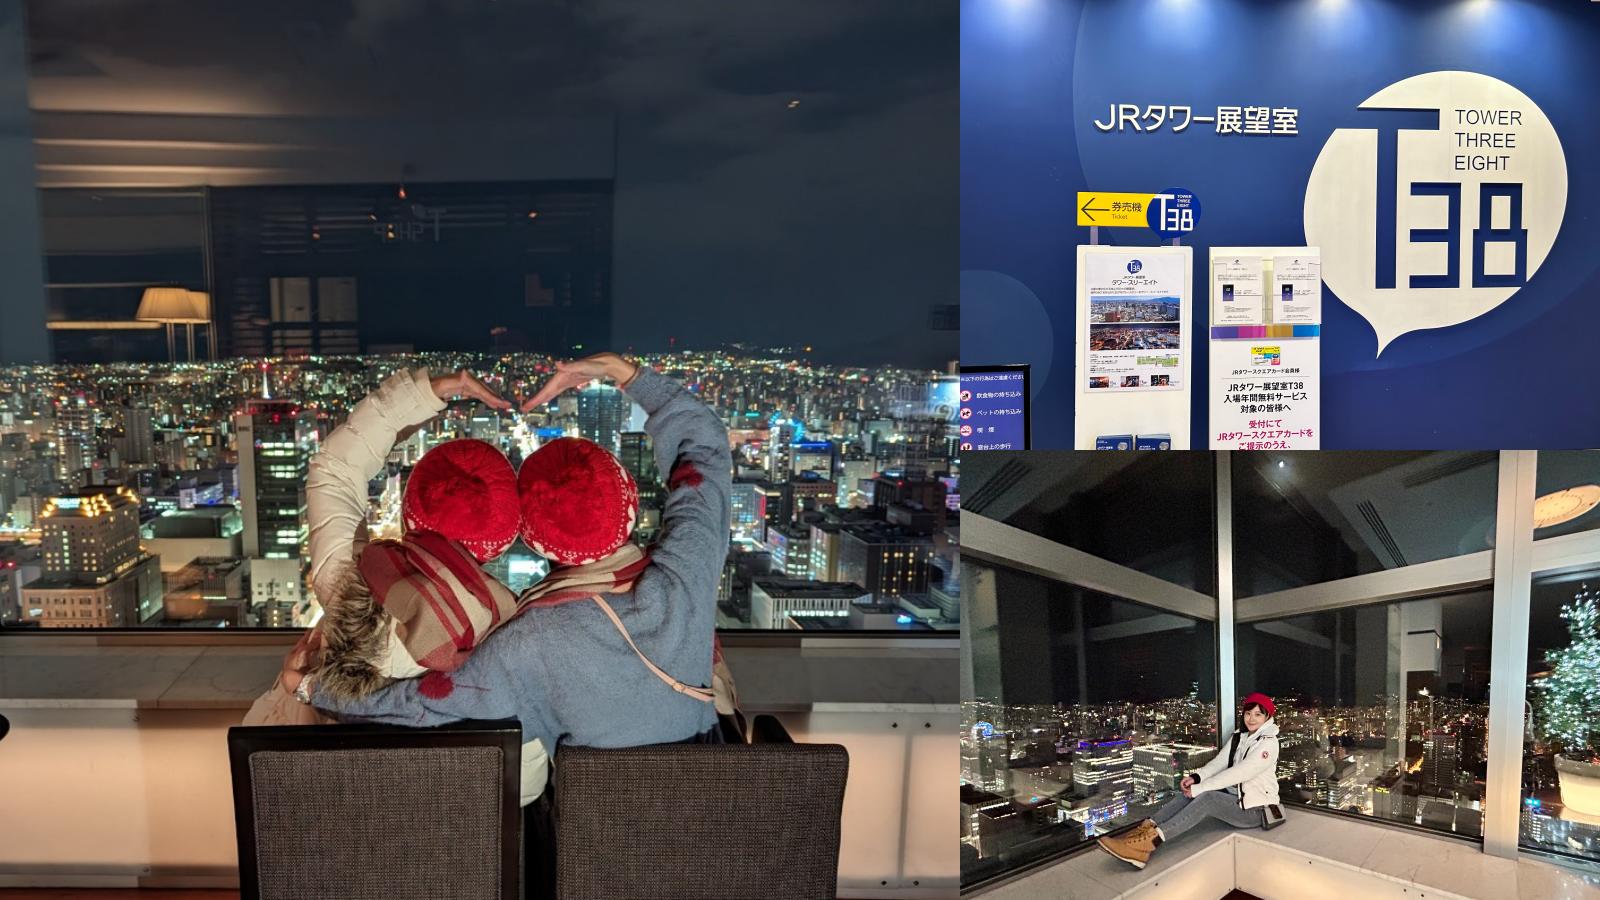 網站近期文章：☆【北海道】JR 塔展望室 T38。北海道最高觀景臺360度高空環景，門票+下午茶套票先買起來！